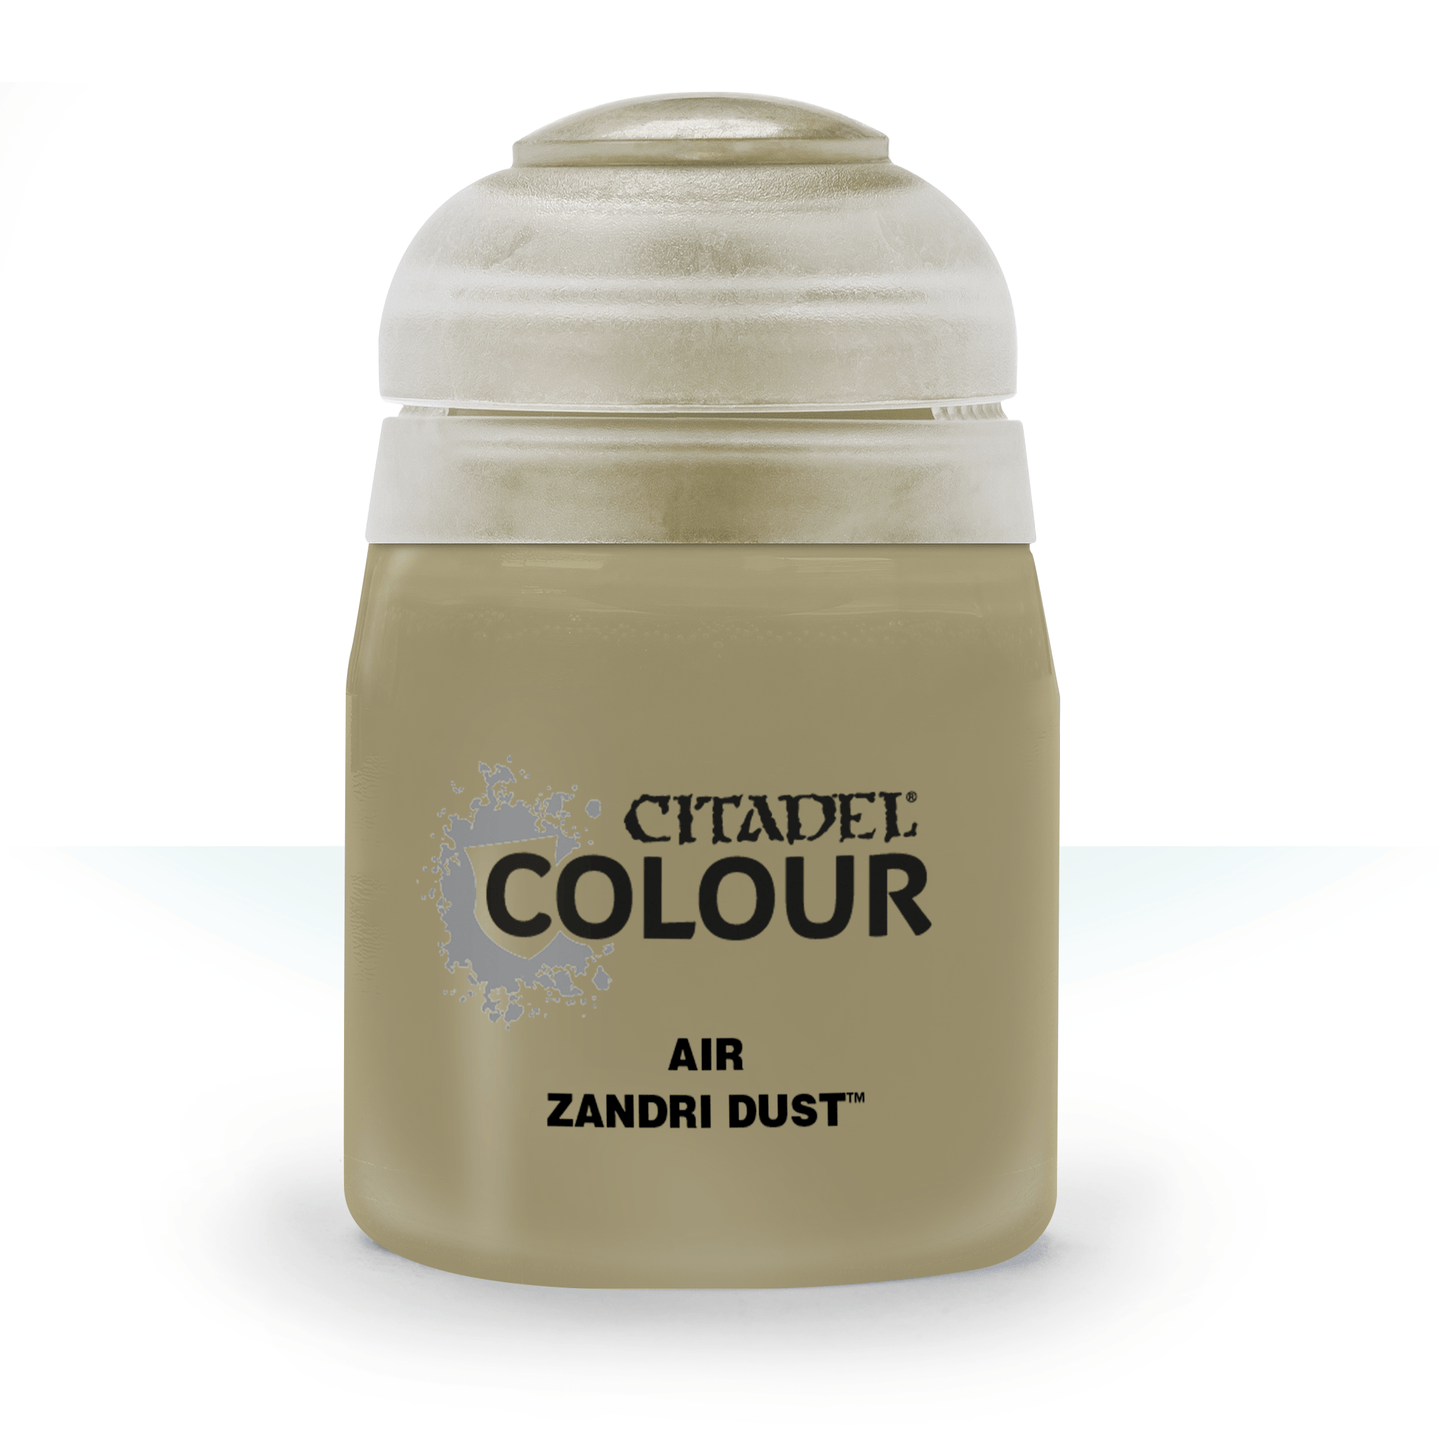 Air: Zandri Dust (24 ml)